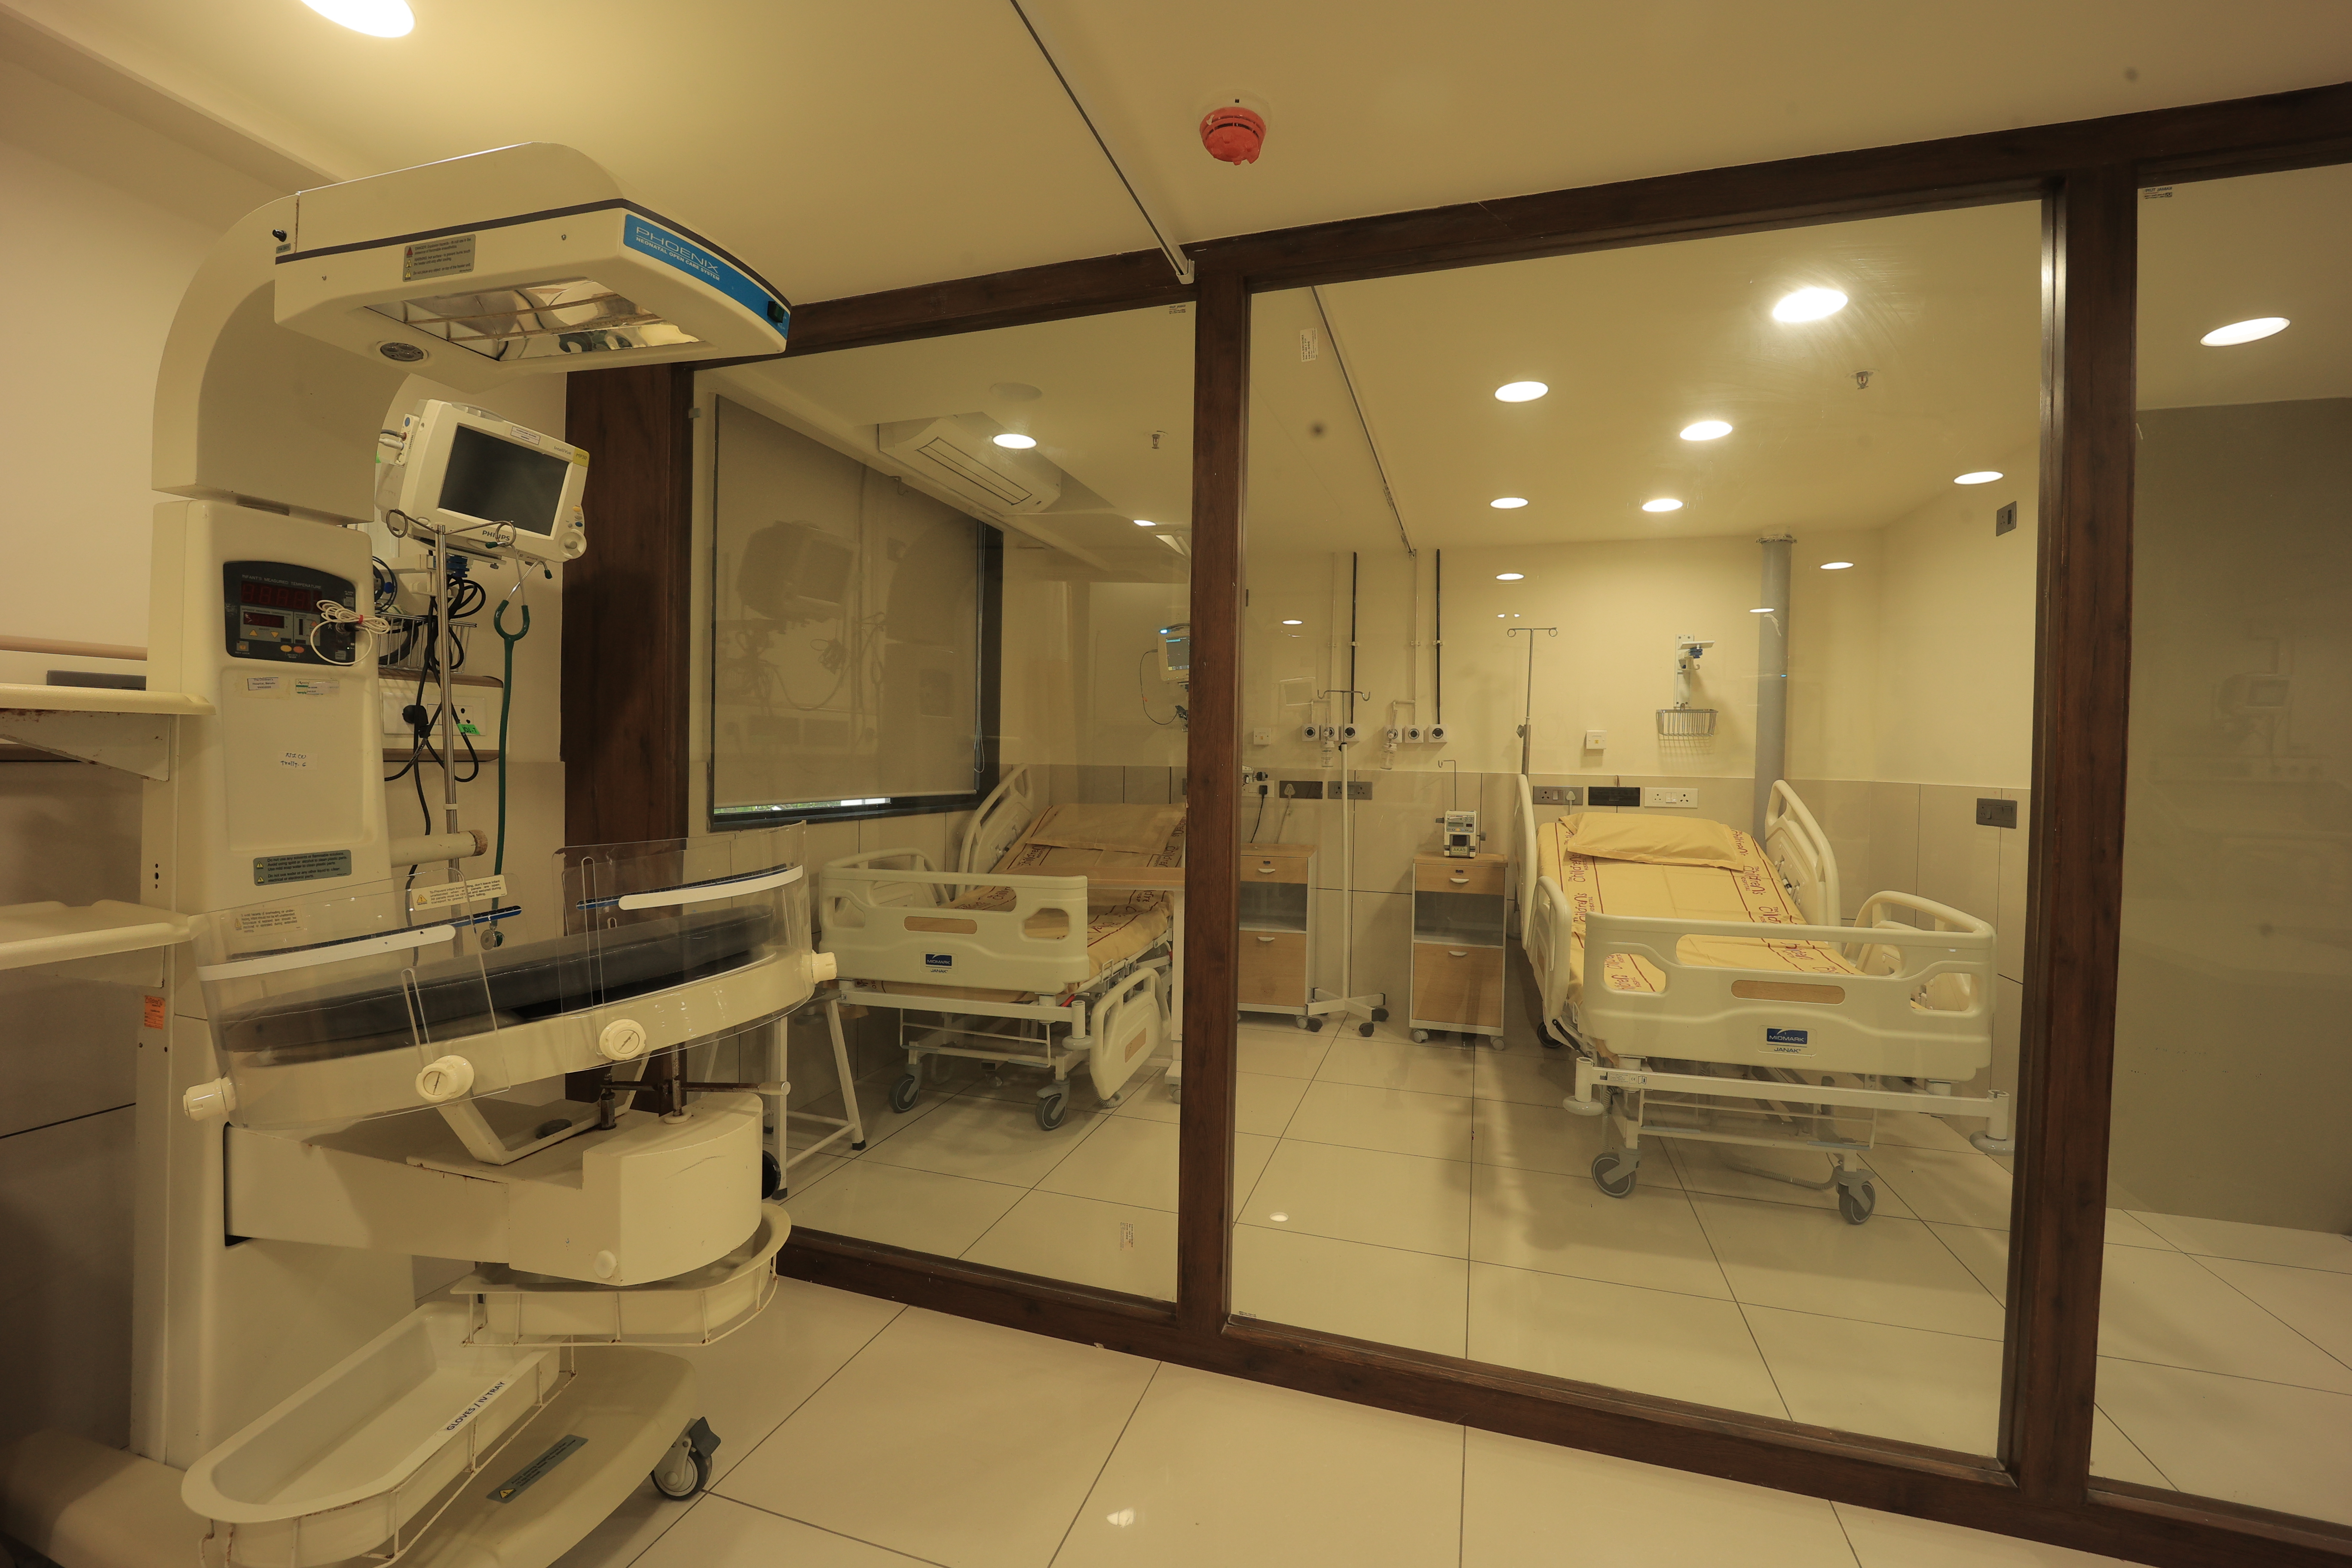 jupiter hospital & research center vadodara photos